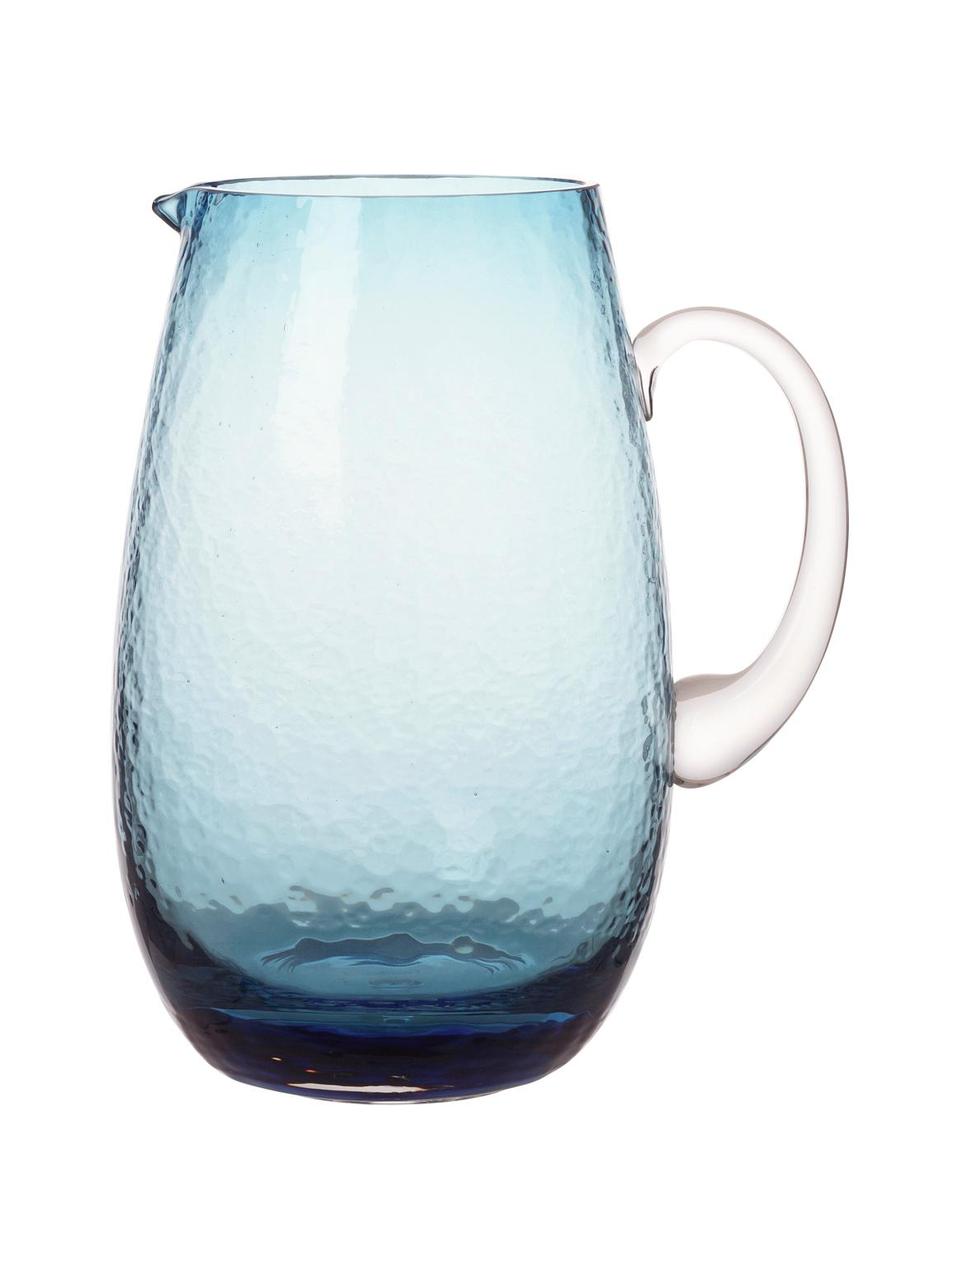 Großer mundgeblasener Krug Hammered mit gehämmerter Oberfläche, 2 L, Glas, mundgeblasen, Blau, transparent, Ø 14 x H 22 cm, 2 L